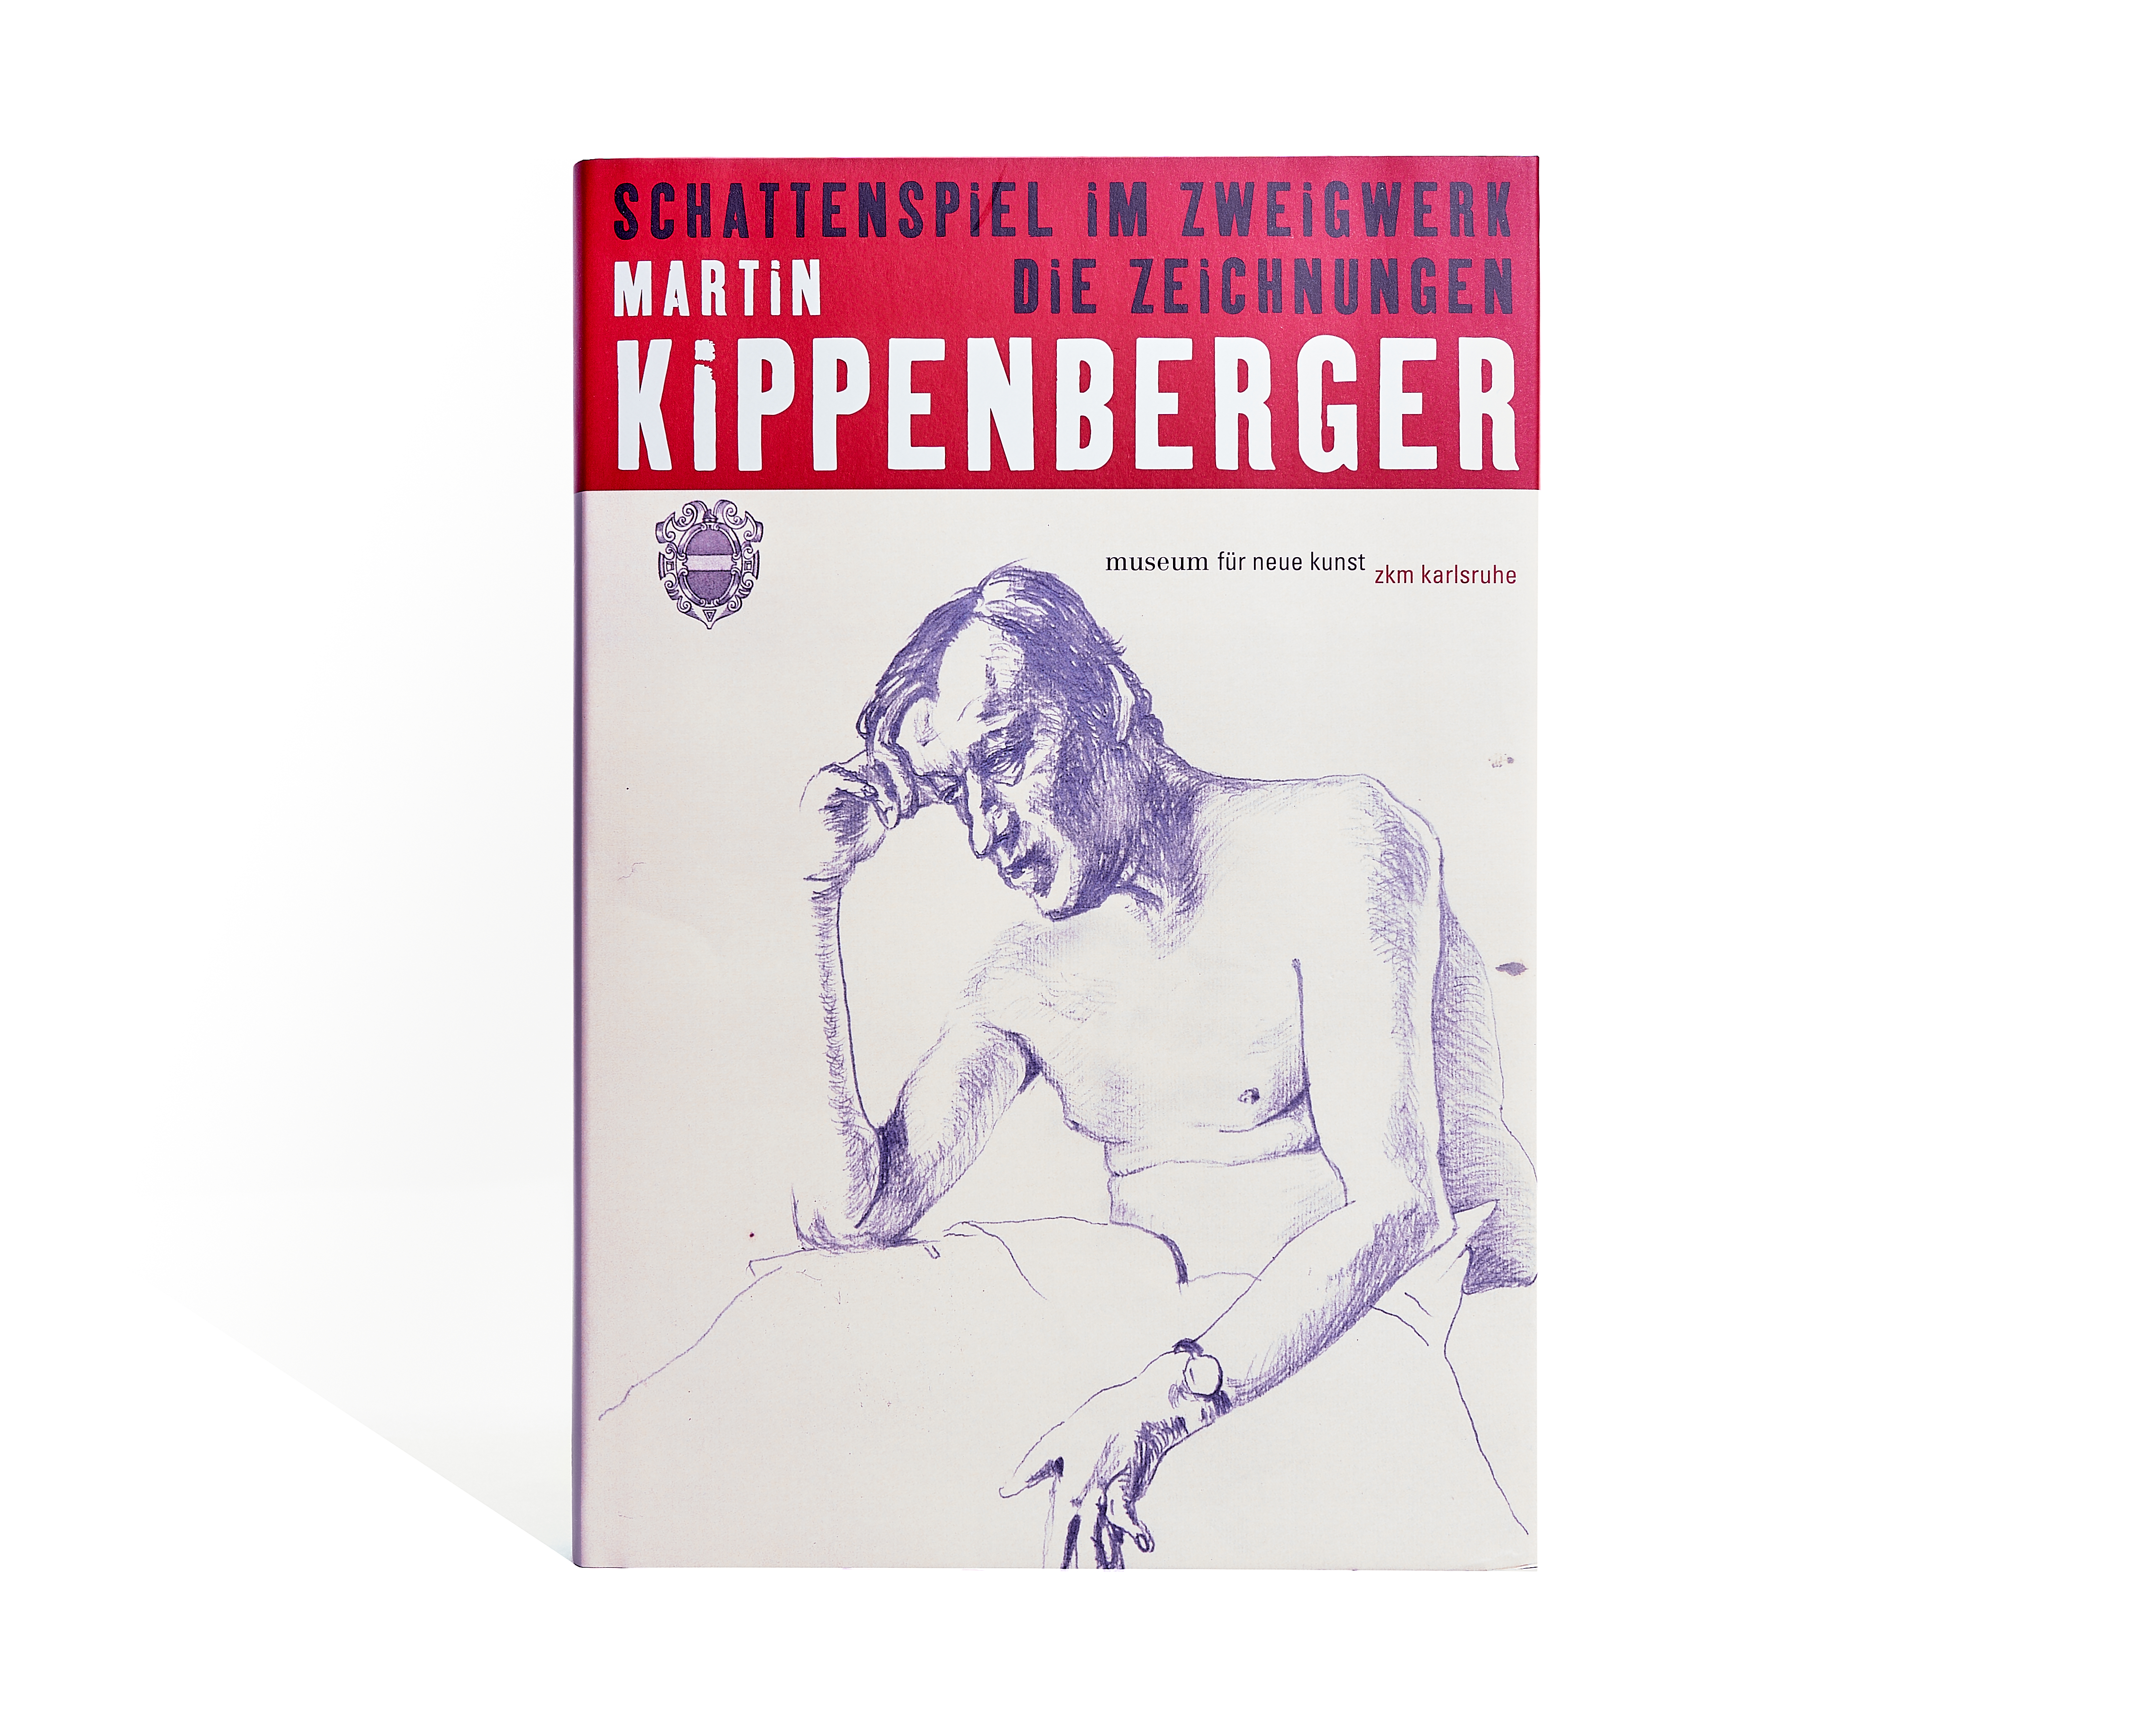 Martin Kippenberger: Schattenspiel im Zweigwerk. Die Zeichnungen